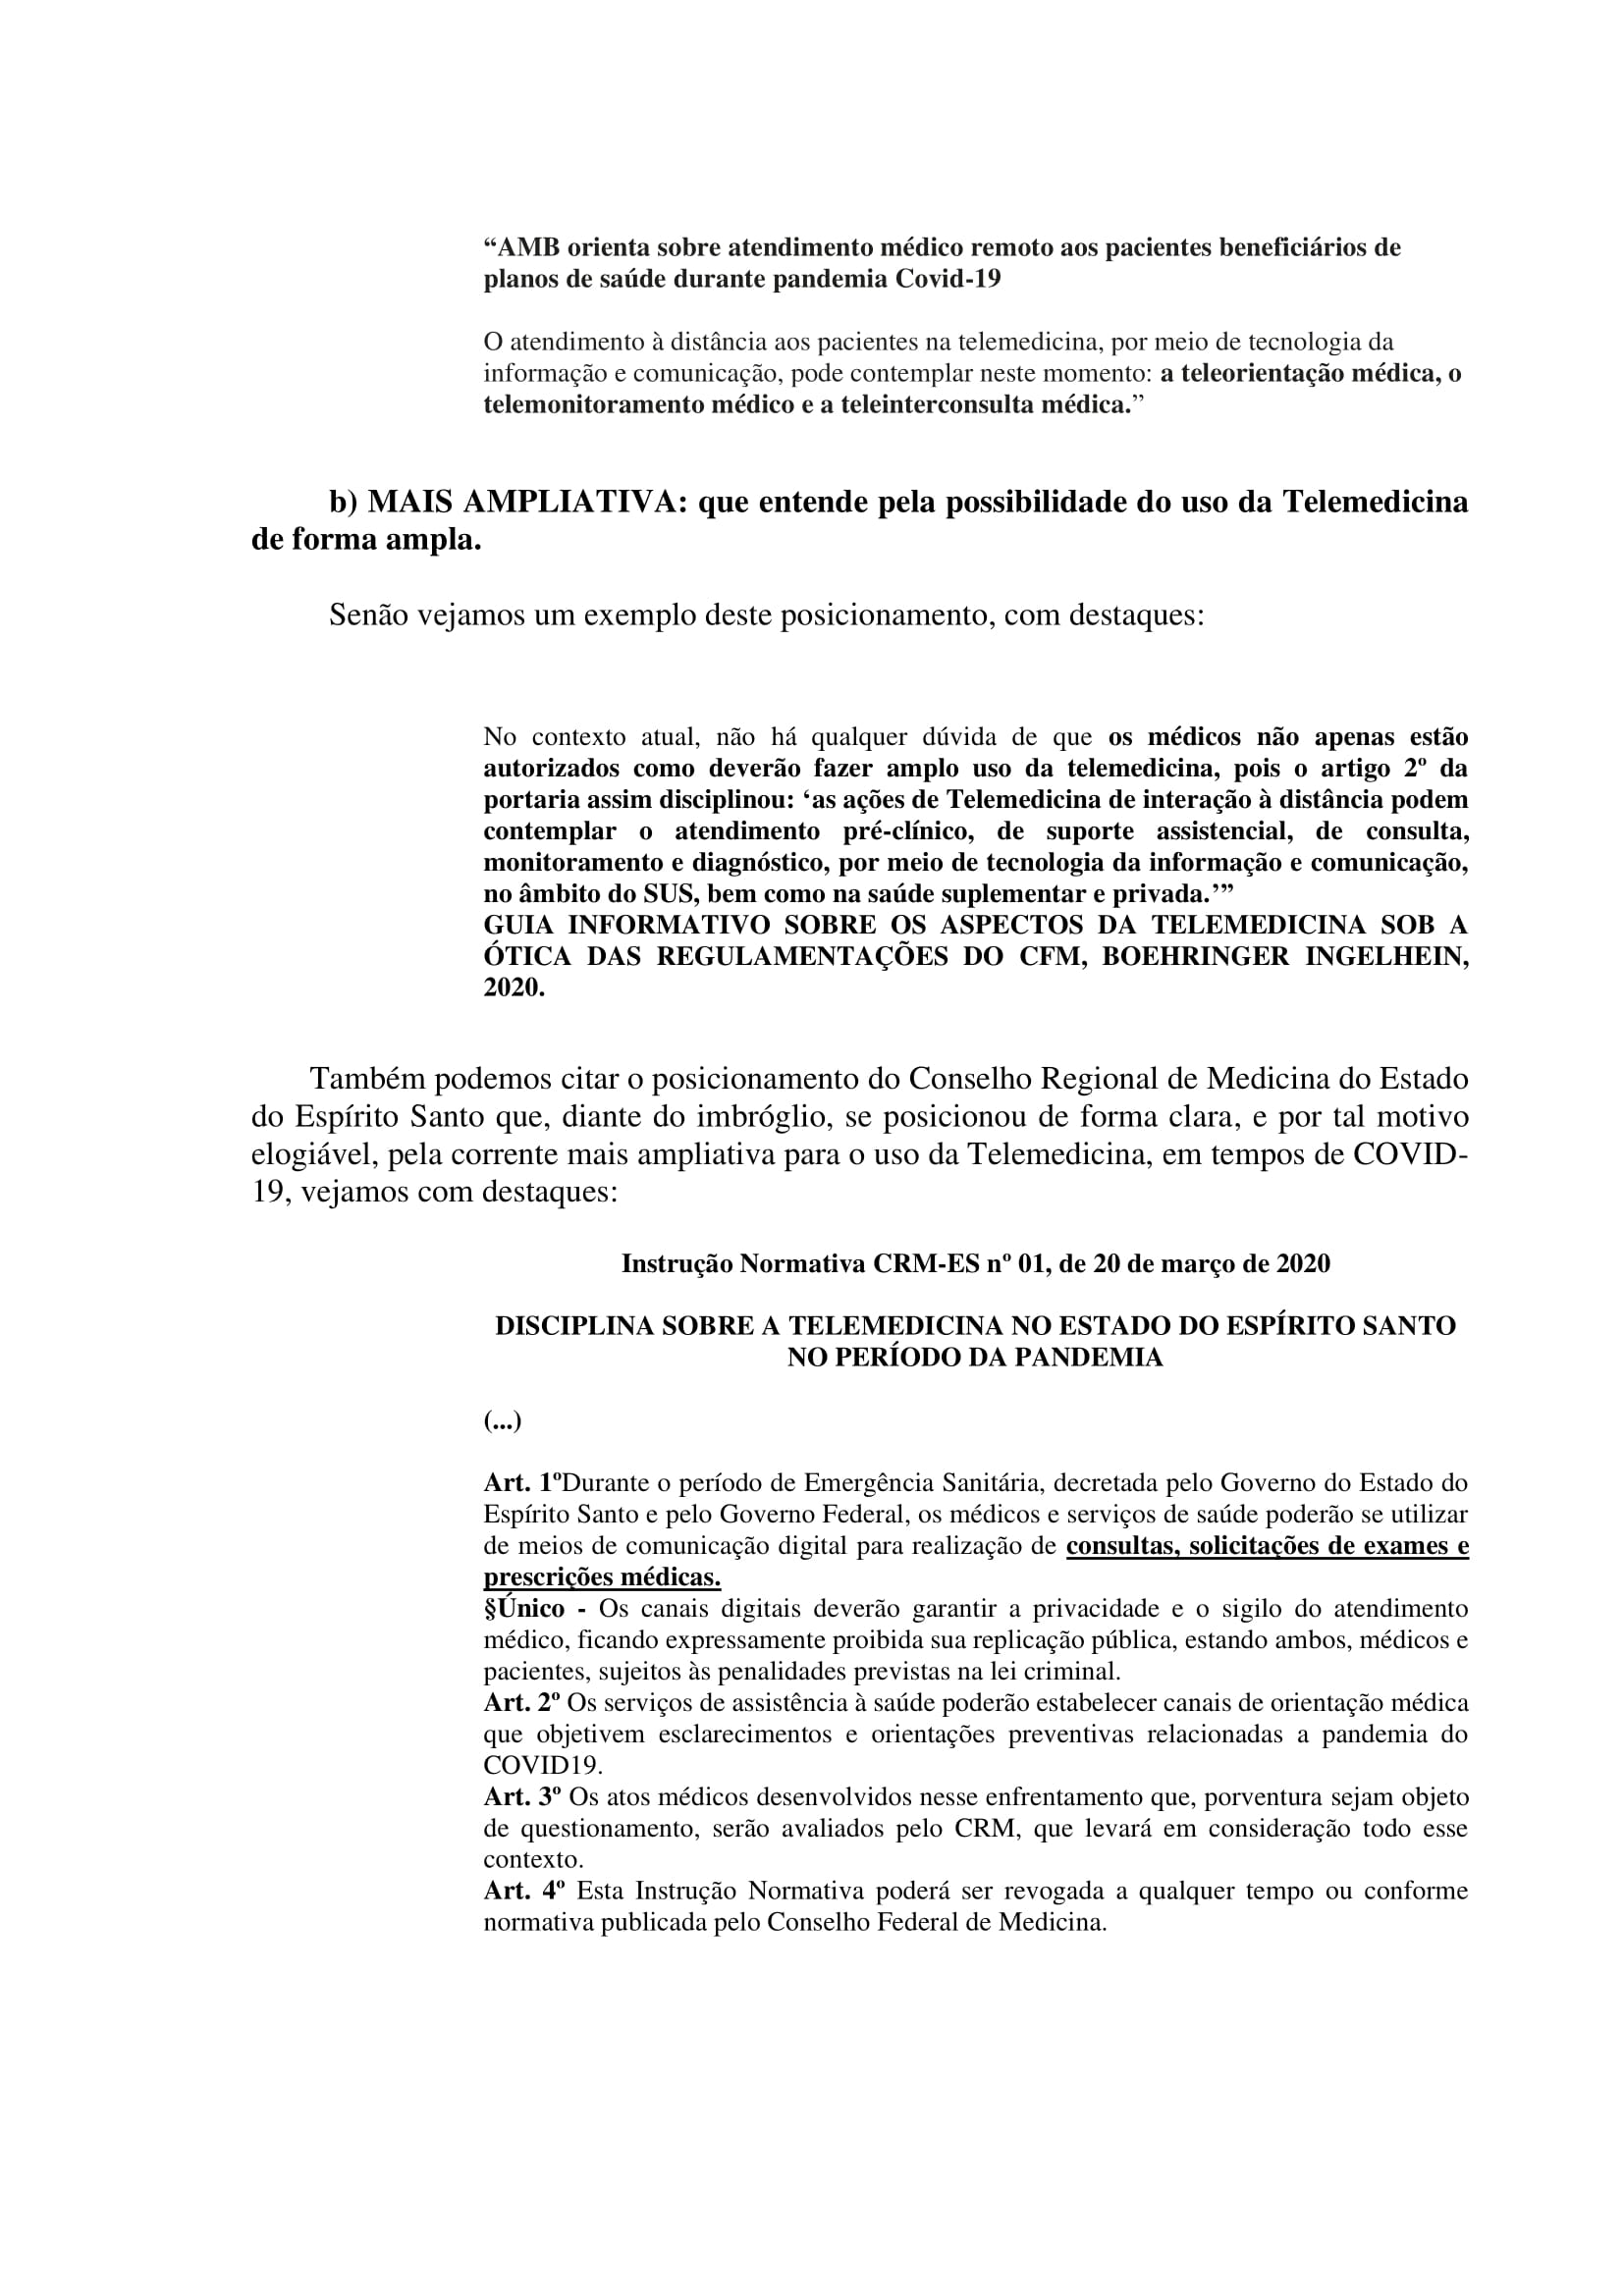 Artigo sobre Telemedicina e suas implicações regulatórias - Tiago Torres-12